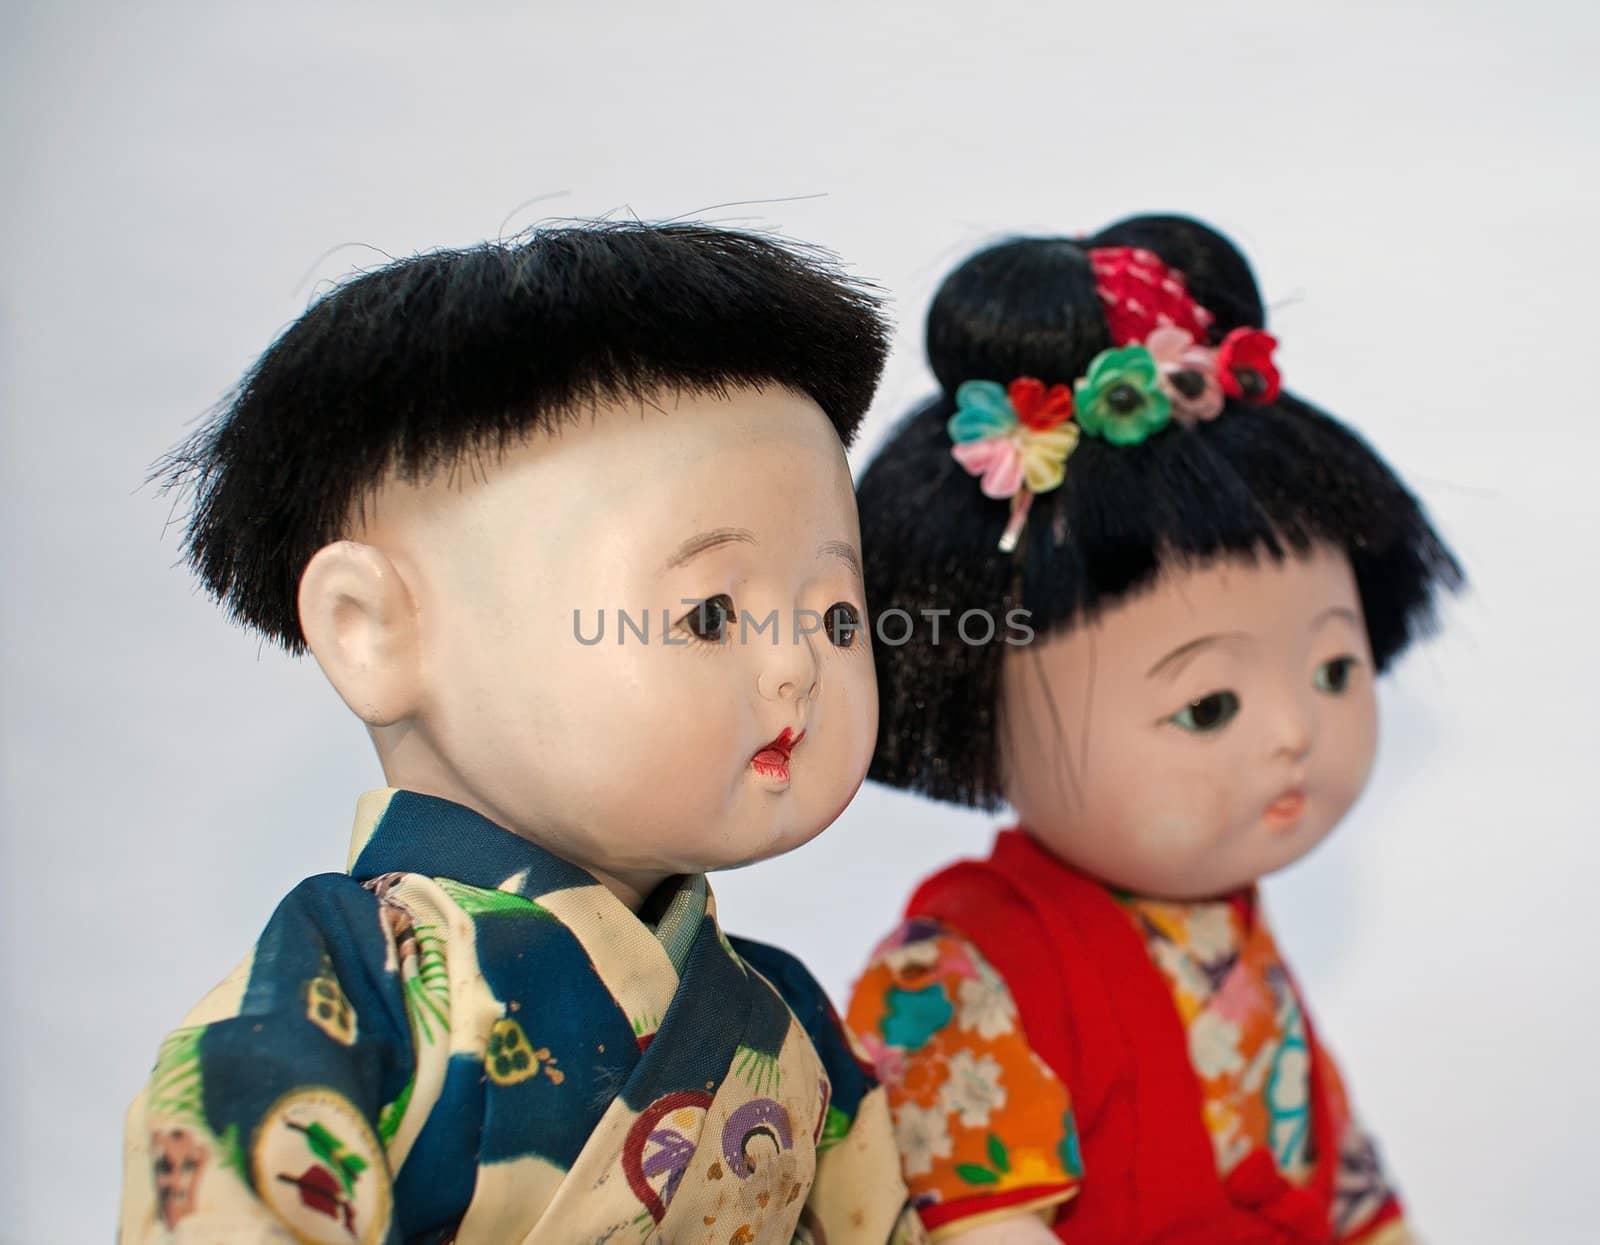 Japaness children by neko92vl